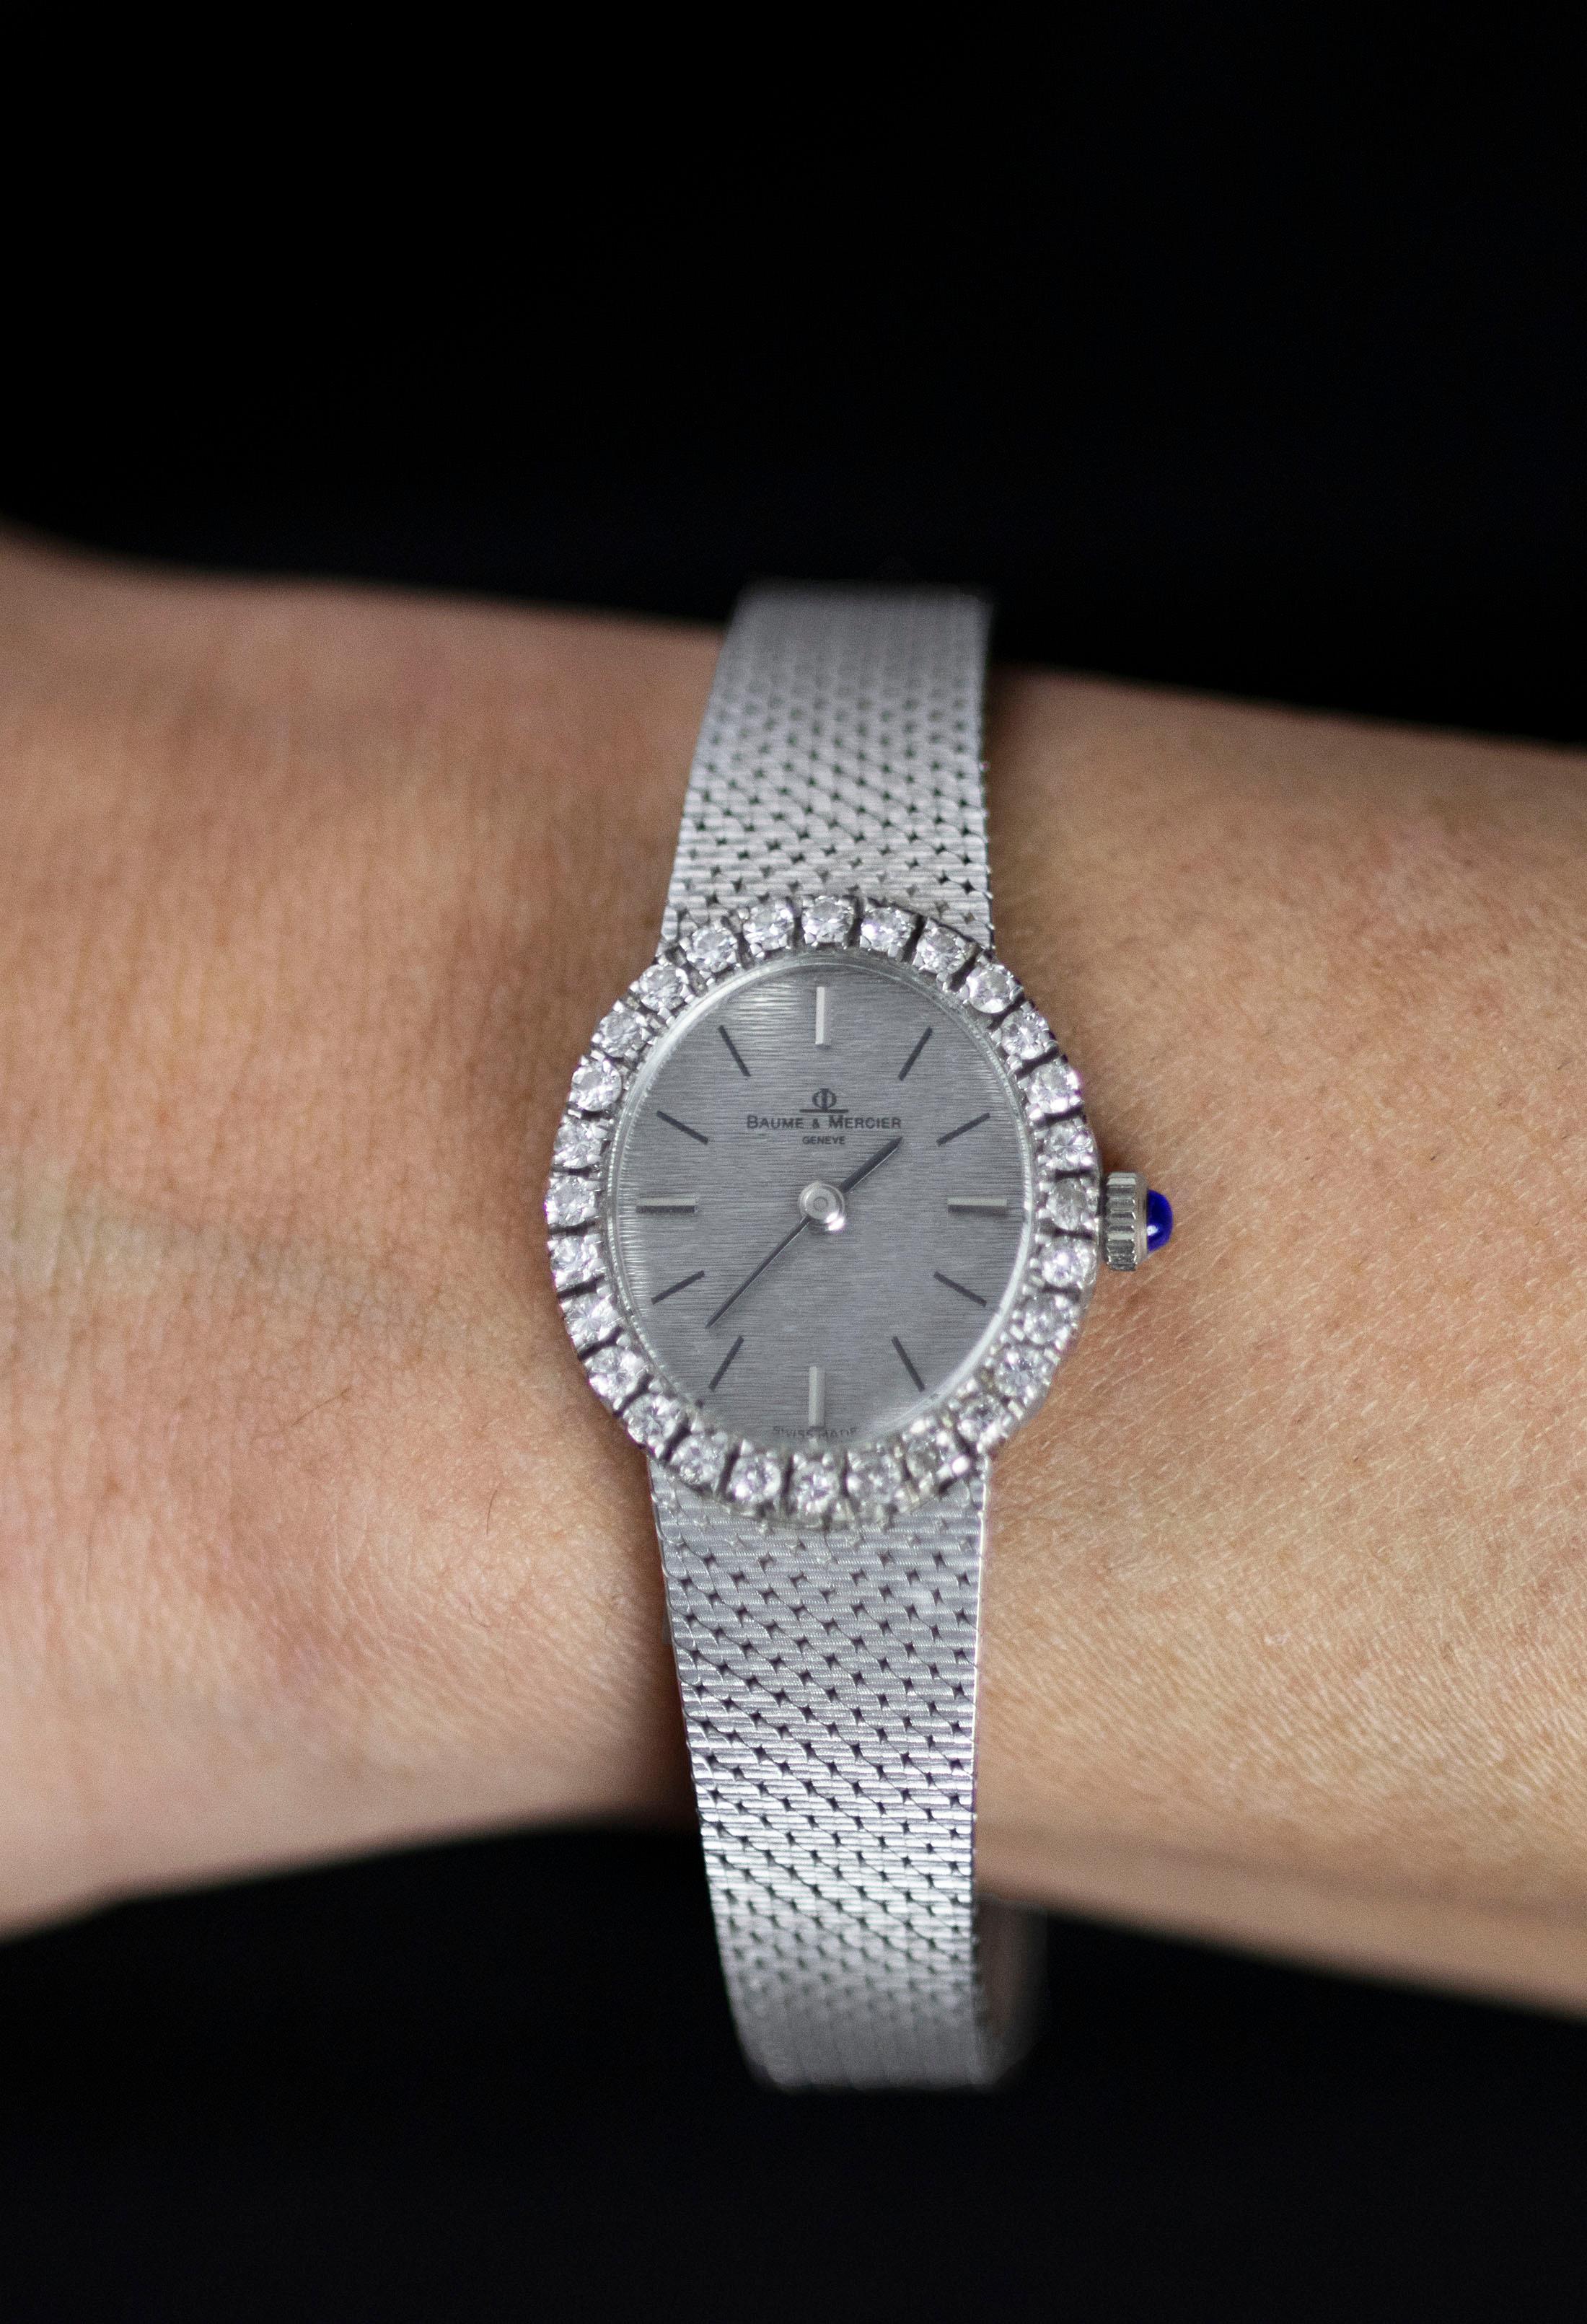 Baume et Mercier Ladies Antique Watch with Diamond Bezel and Blue Sapphire Crown For Sale 1